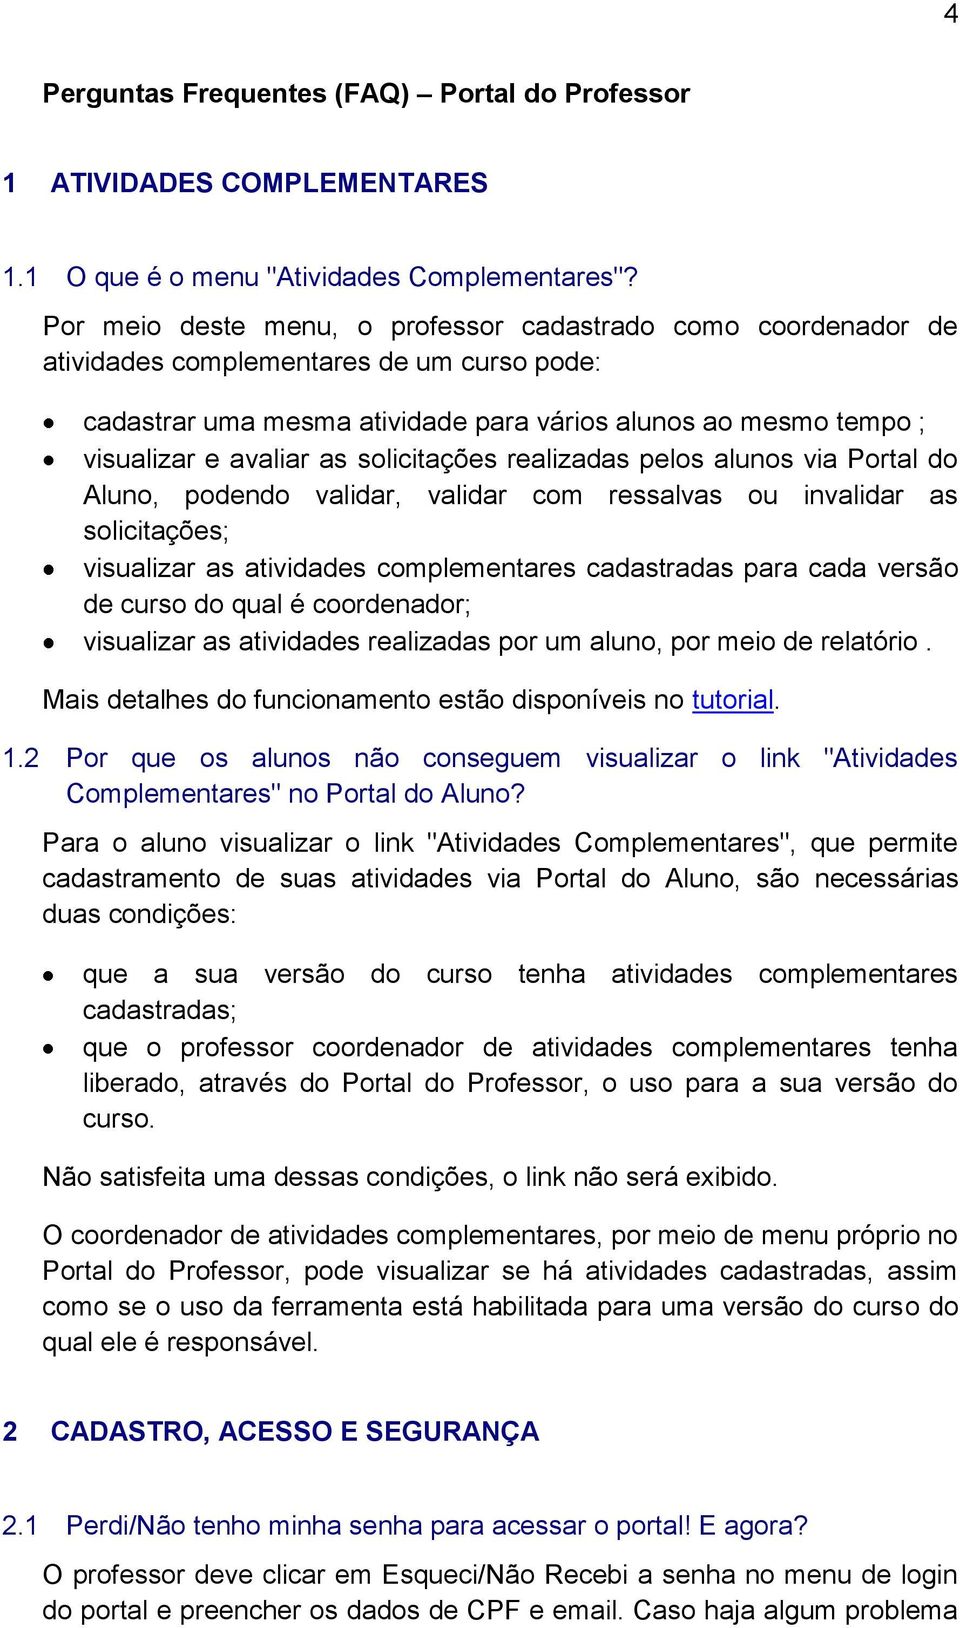 solicitações realizadas pelos alunos via Portal do Aluno, podendo validar, validar com ressalvas ou invalidar as solicitações; visualizar as atividades complementares cadastradas para cada versão de